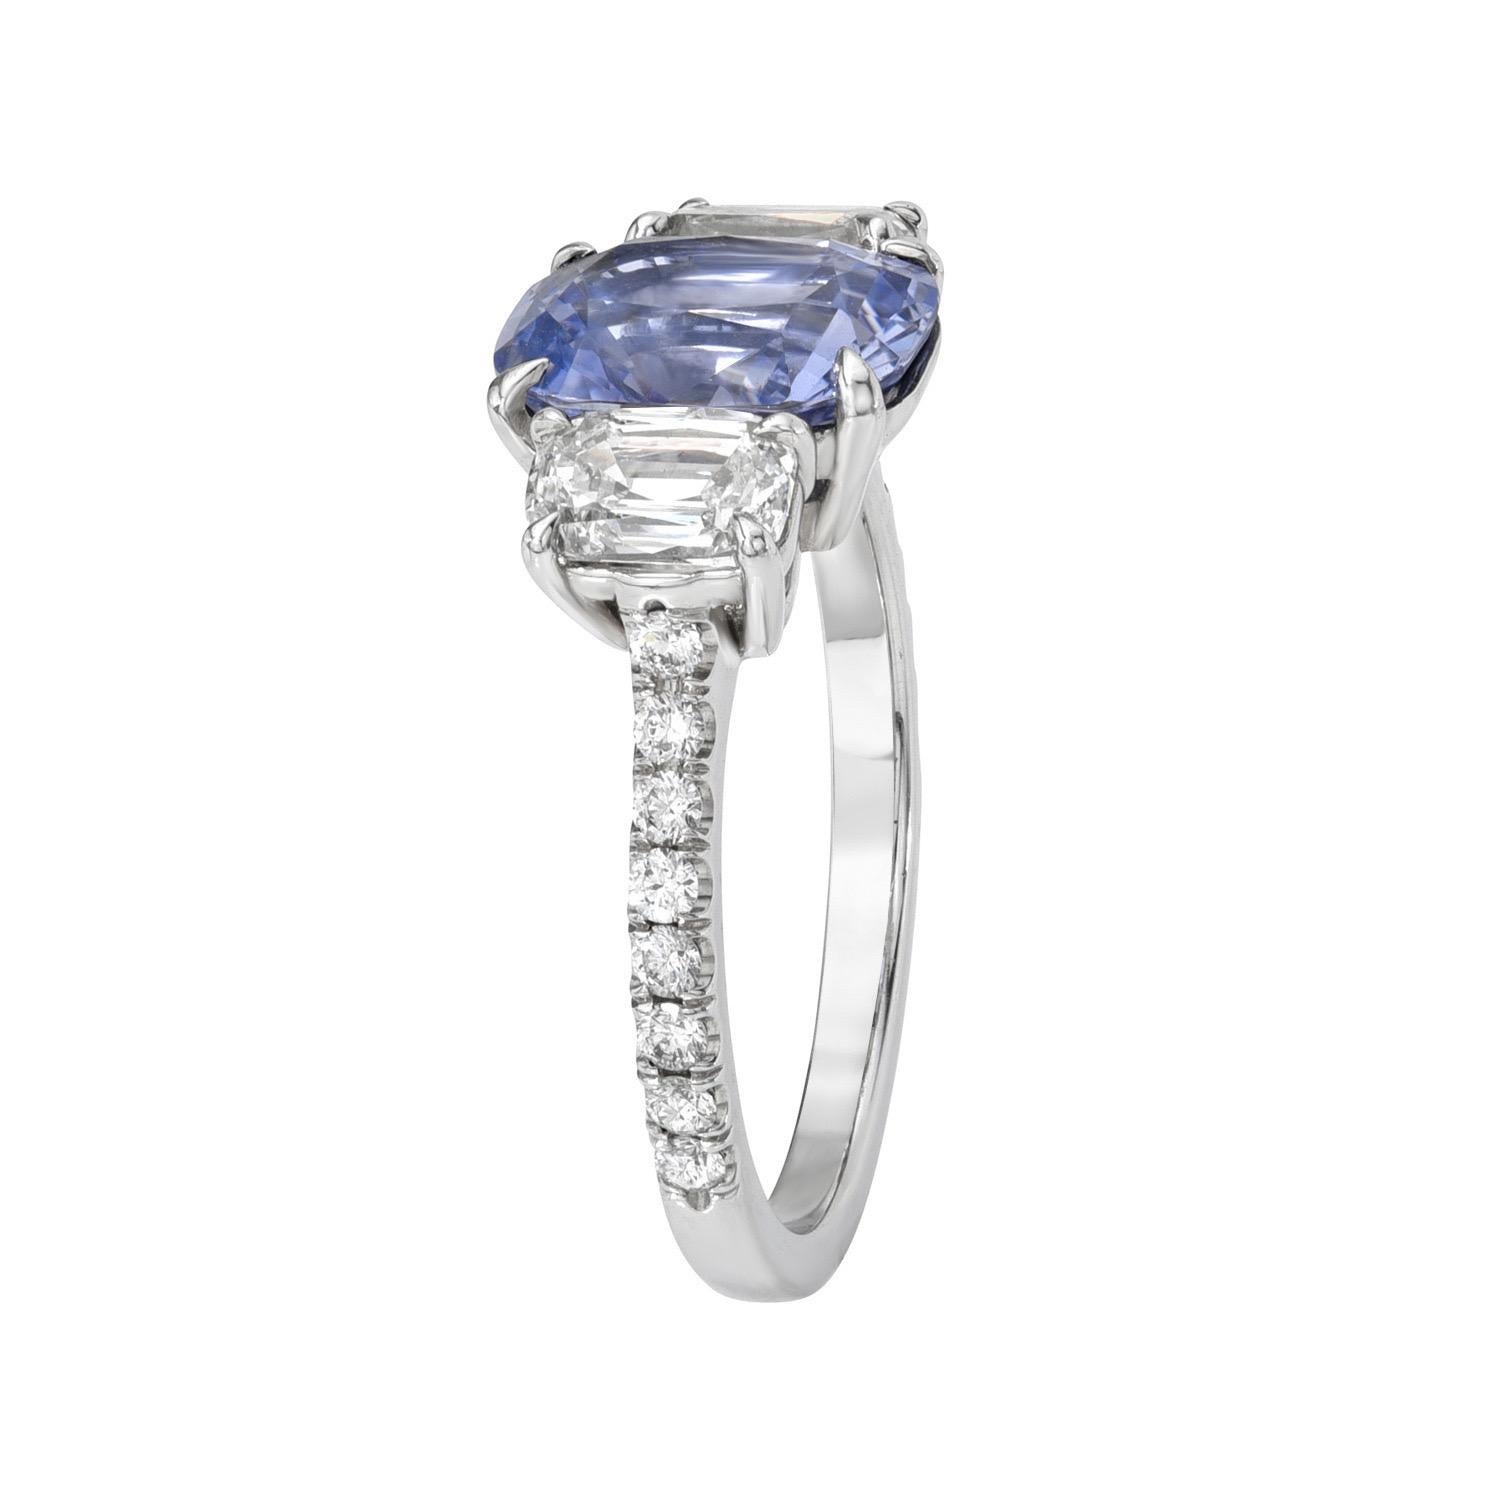 Lebendiger und einzigartiger Dreistein-Platinring mit 2,79 Karat ungeheiztem Blauen Saphir, flankiert von einem Paar 1,07 Karat I/SI1 Kissen-Diamanten und insgesamt 0,24 Karat runden Brillanten
Ring Größe 6. Die Größenänderung ist auf Anfrage